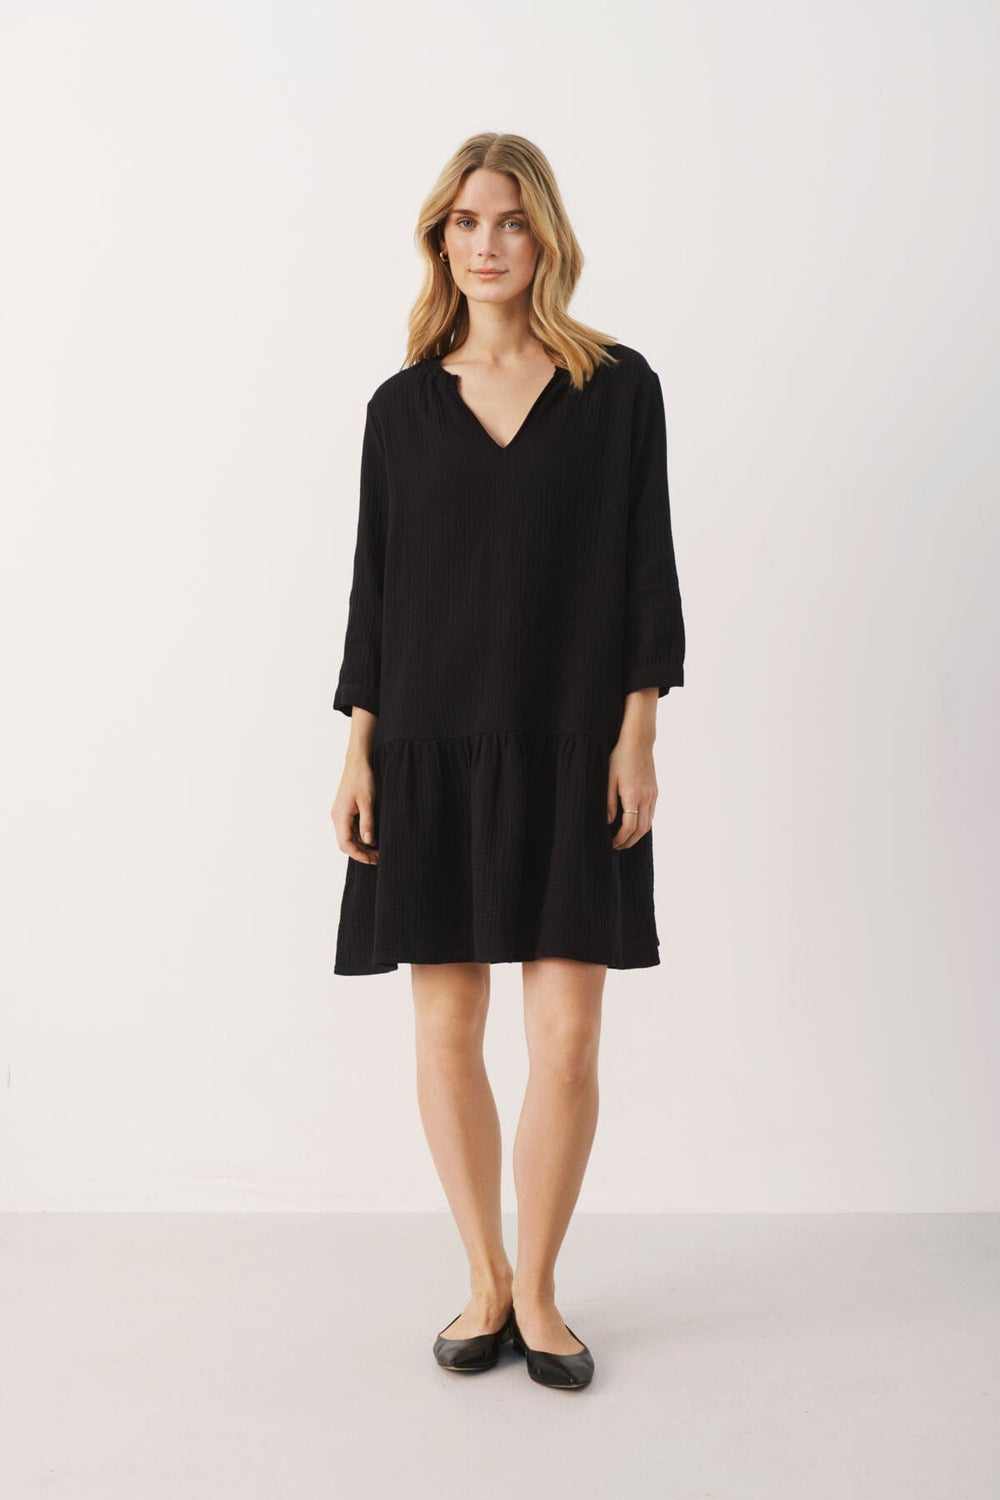 Chaniapw Dress Black | Kjoler | Smuk - Dameklær på nett